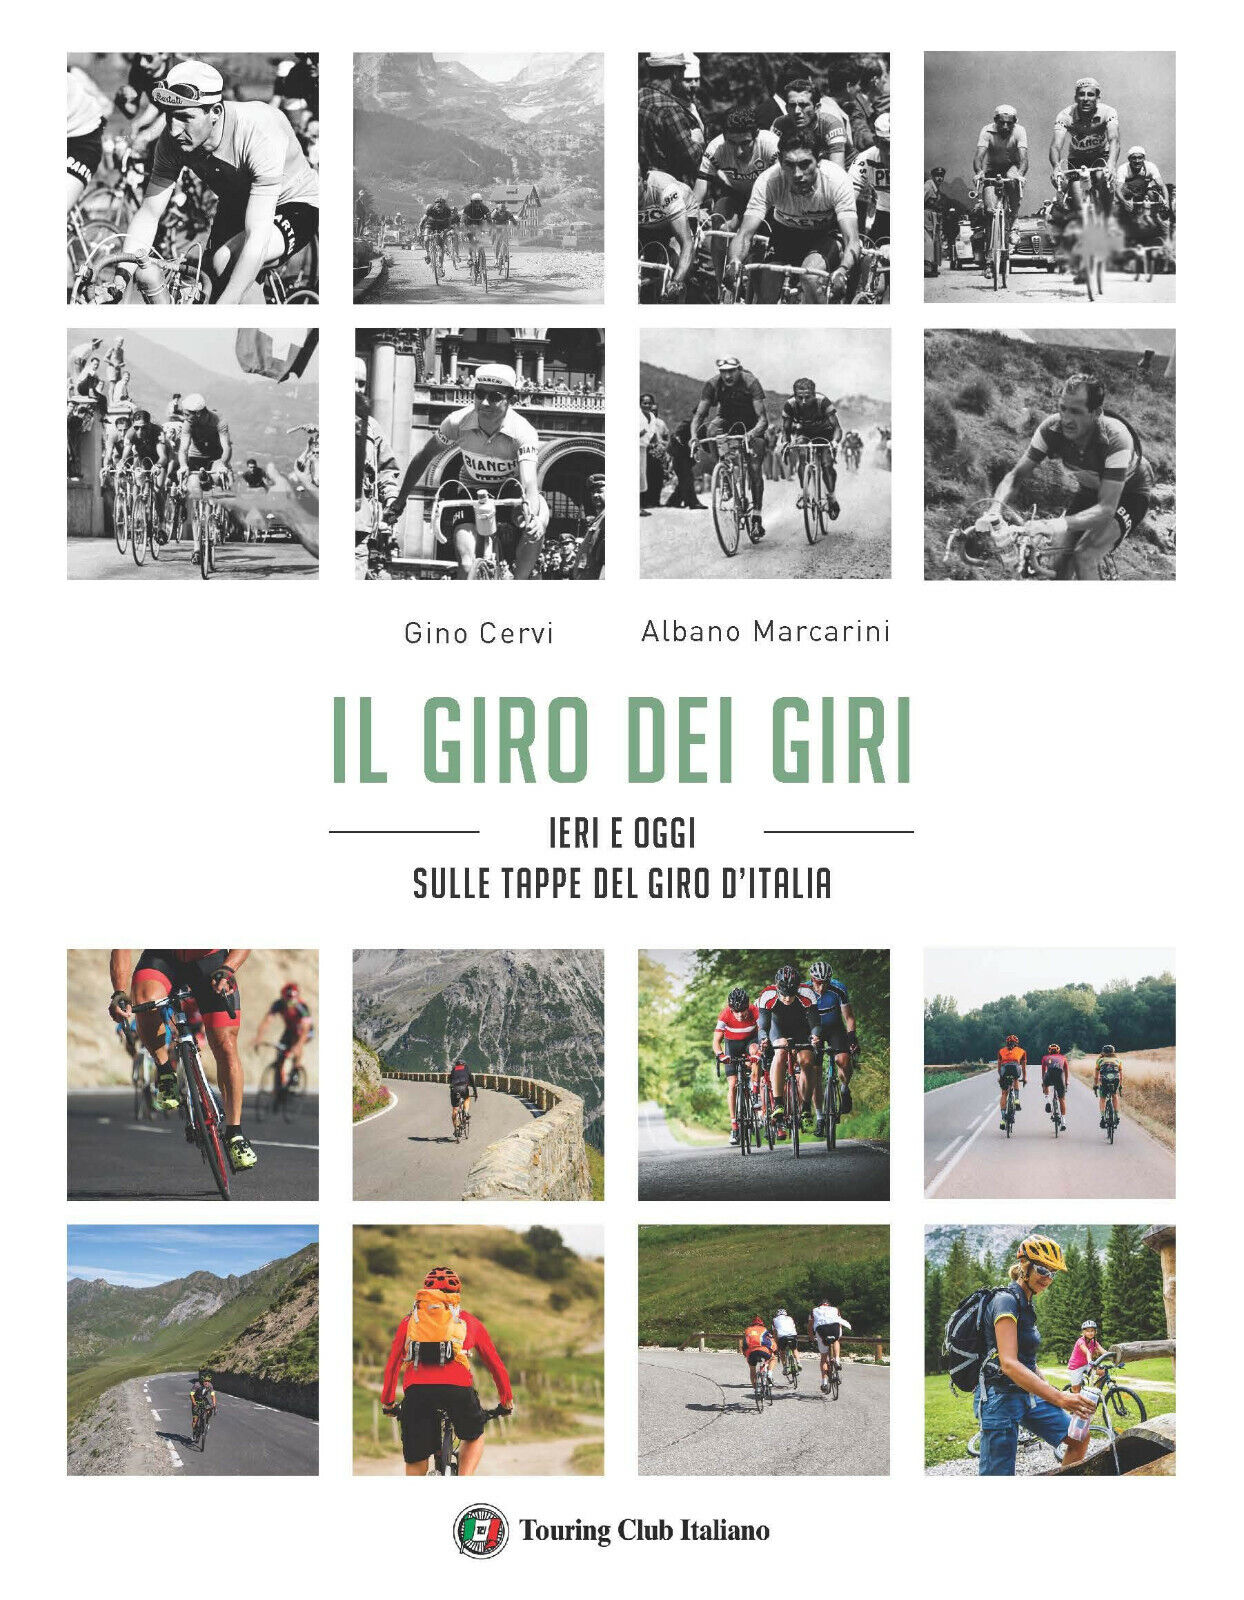 Il giro dei giri. Ieri e oggi sulle strade del Giro d'Italia - Touring, 2020